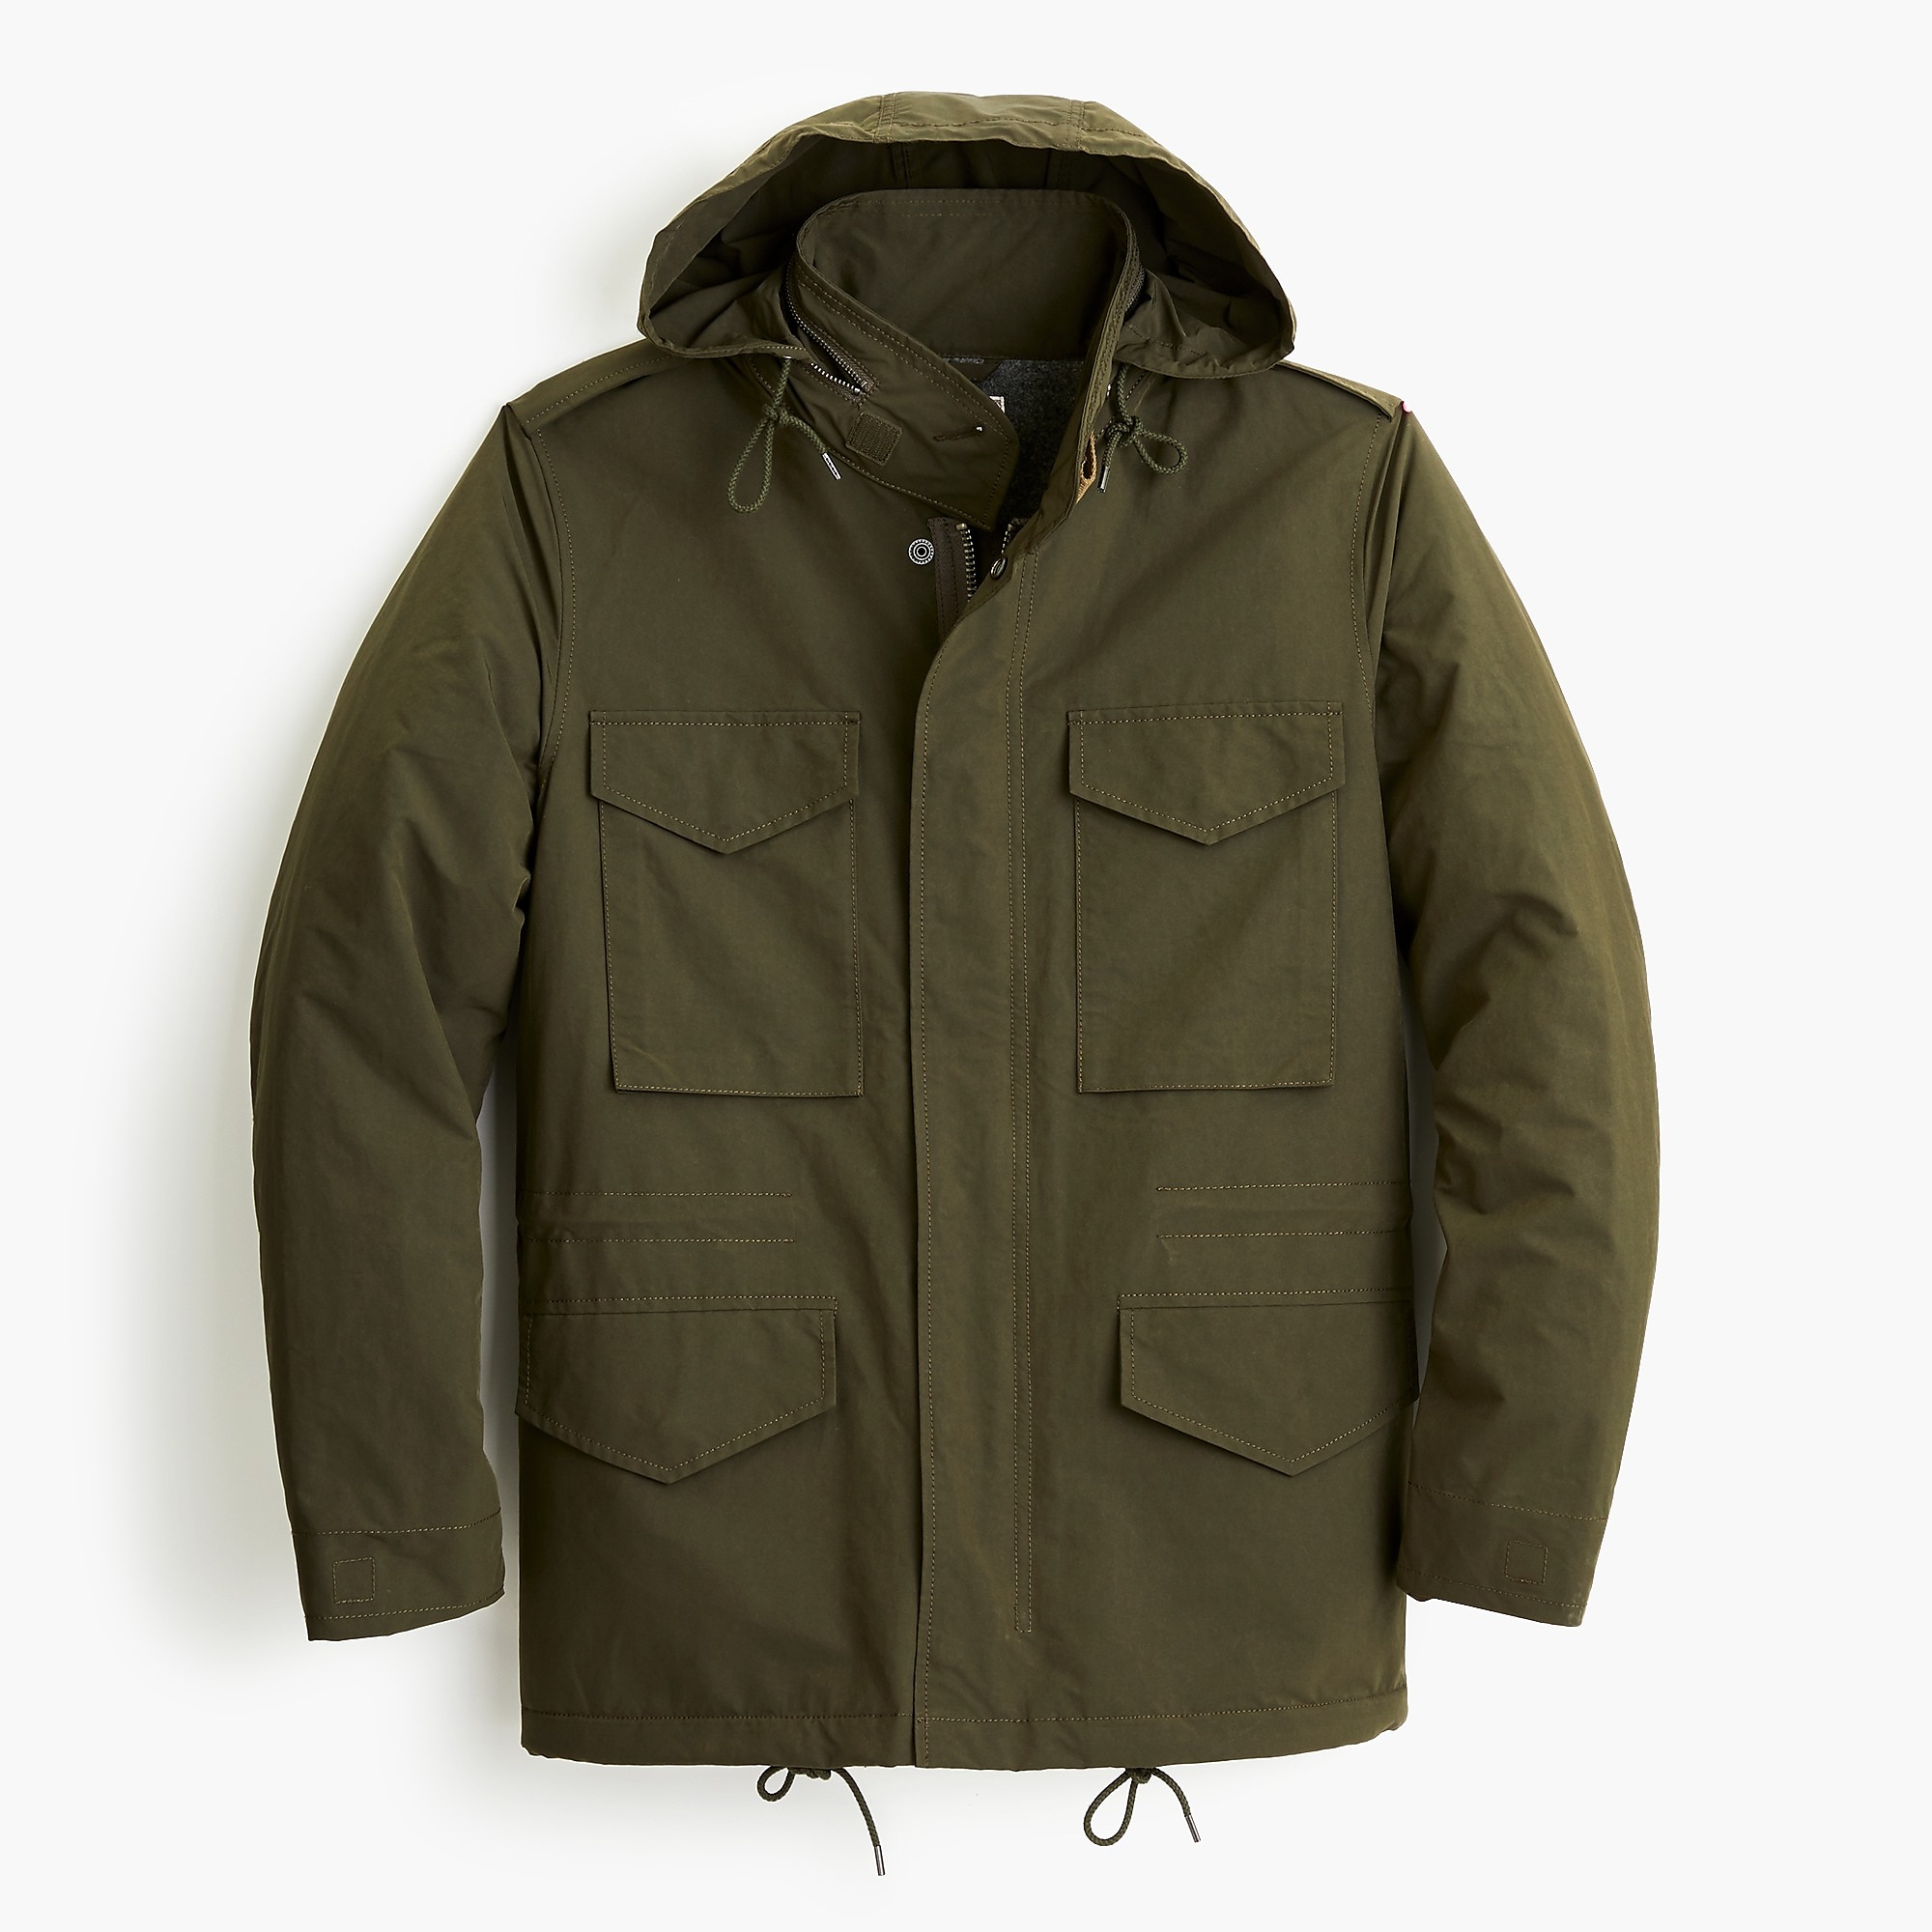 Nylon M-65 jacket : Men coats & jackets | J.Crew